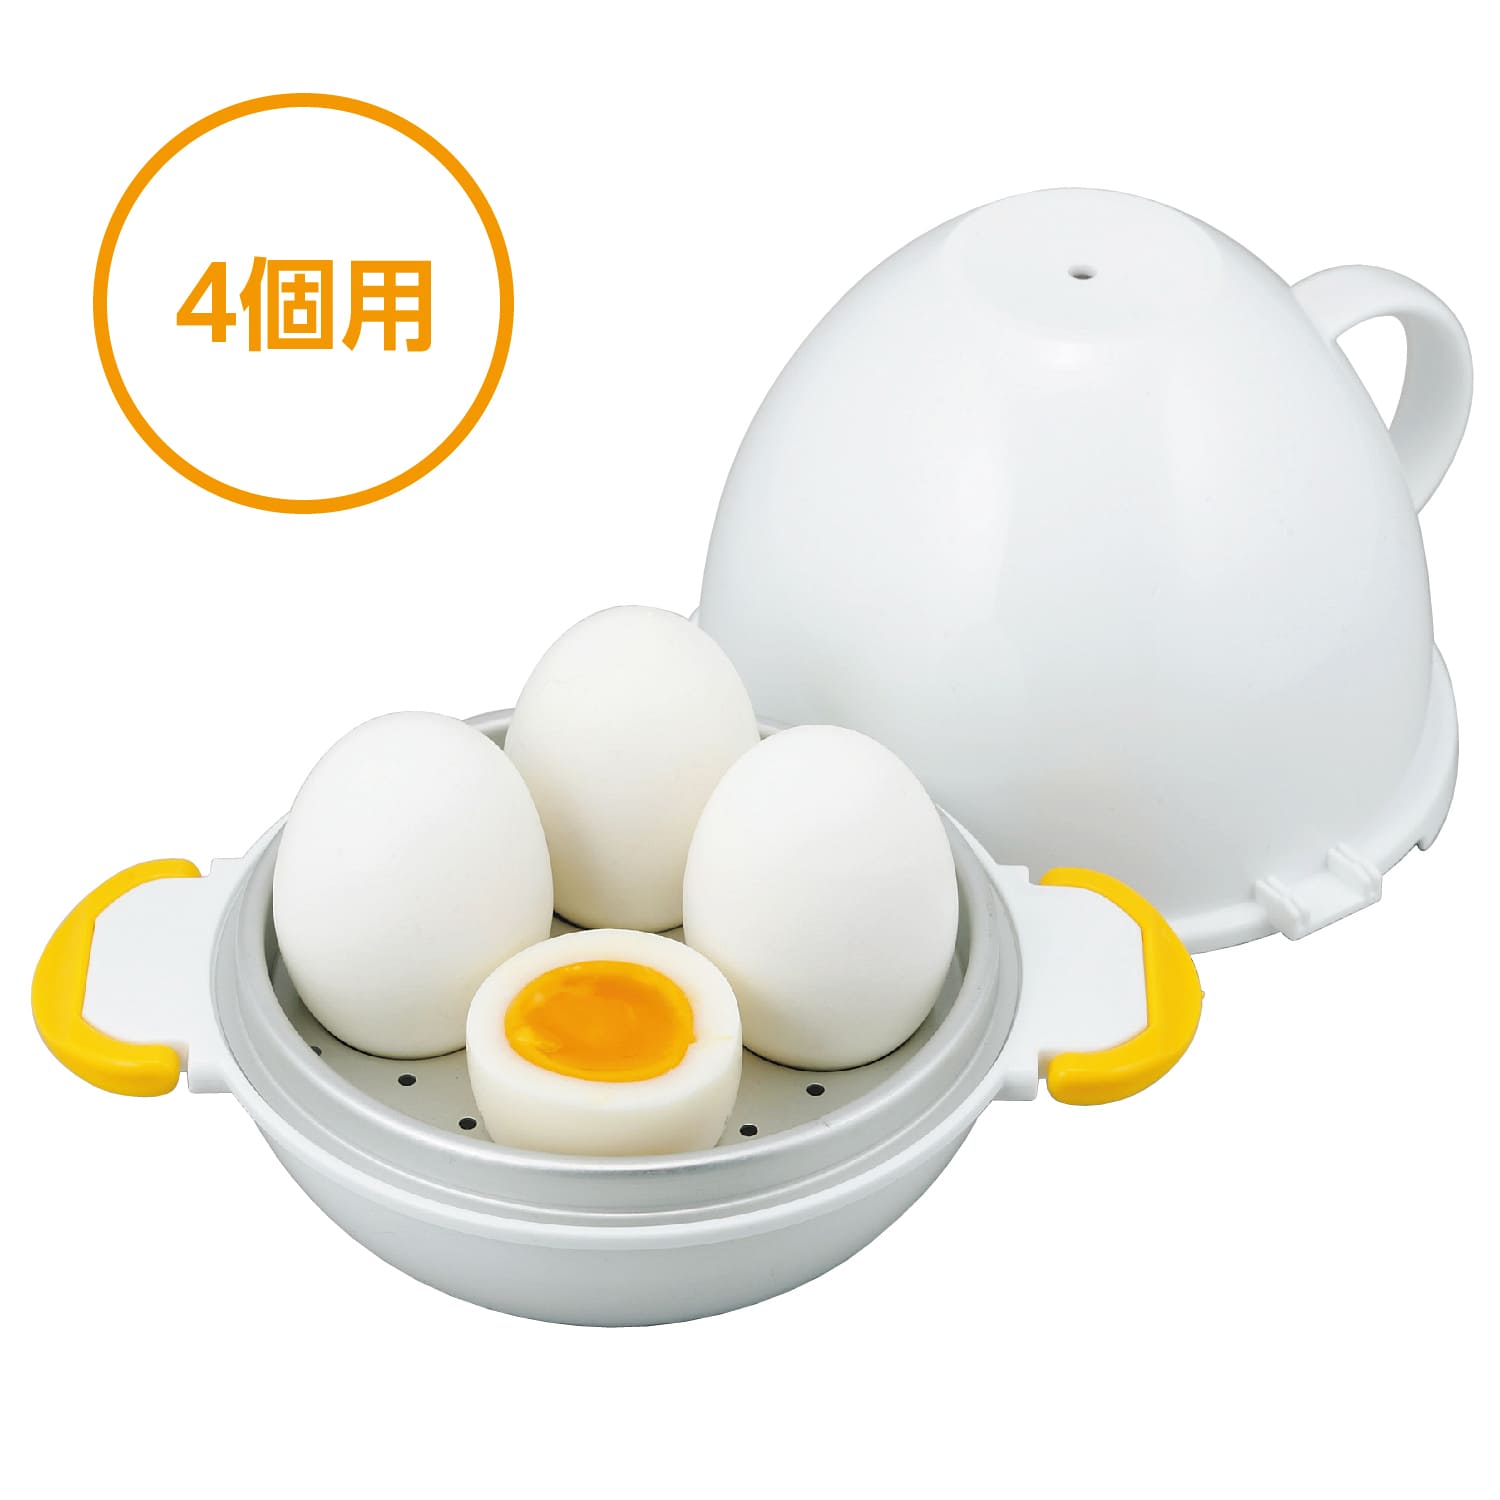 レンジで茹で卵は……実は、作れる！チンしてお手軽に茹で卵を料理にプラス